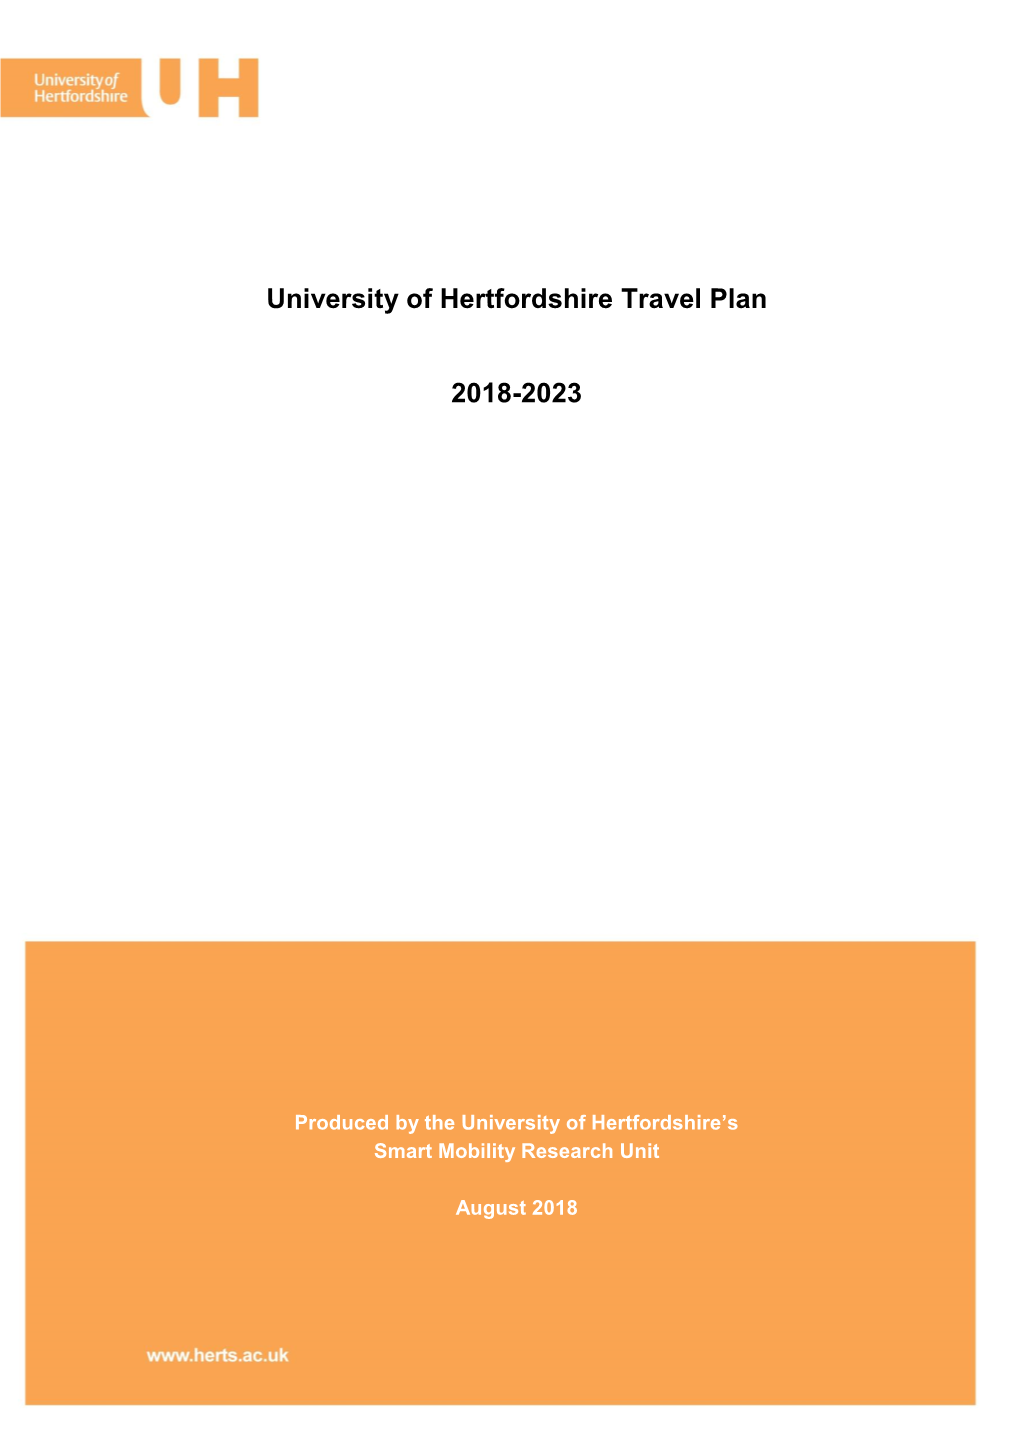 Travel Plan (2018-2023)